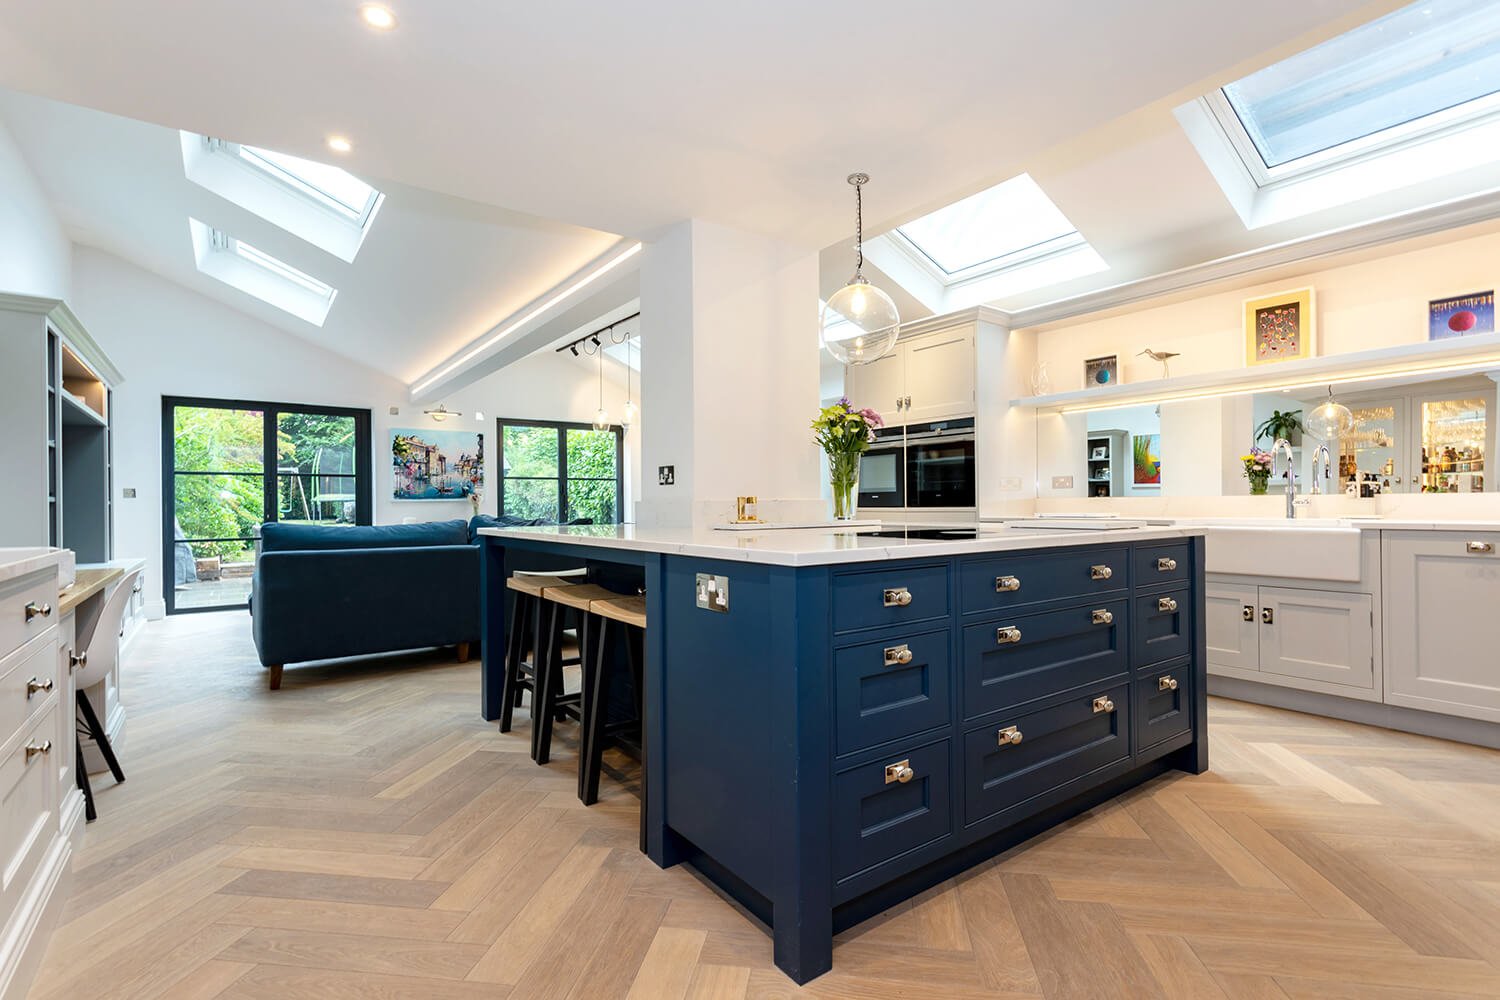 acr-build-beautiful-kitchen-skylight-design-harpenden-kitchen-parquet-flooring.jpg